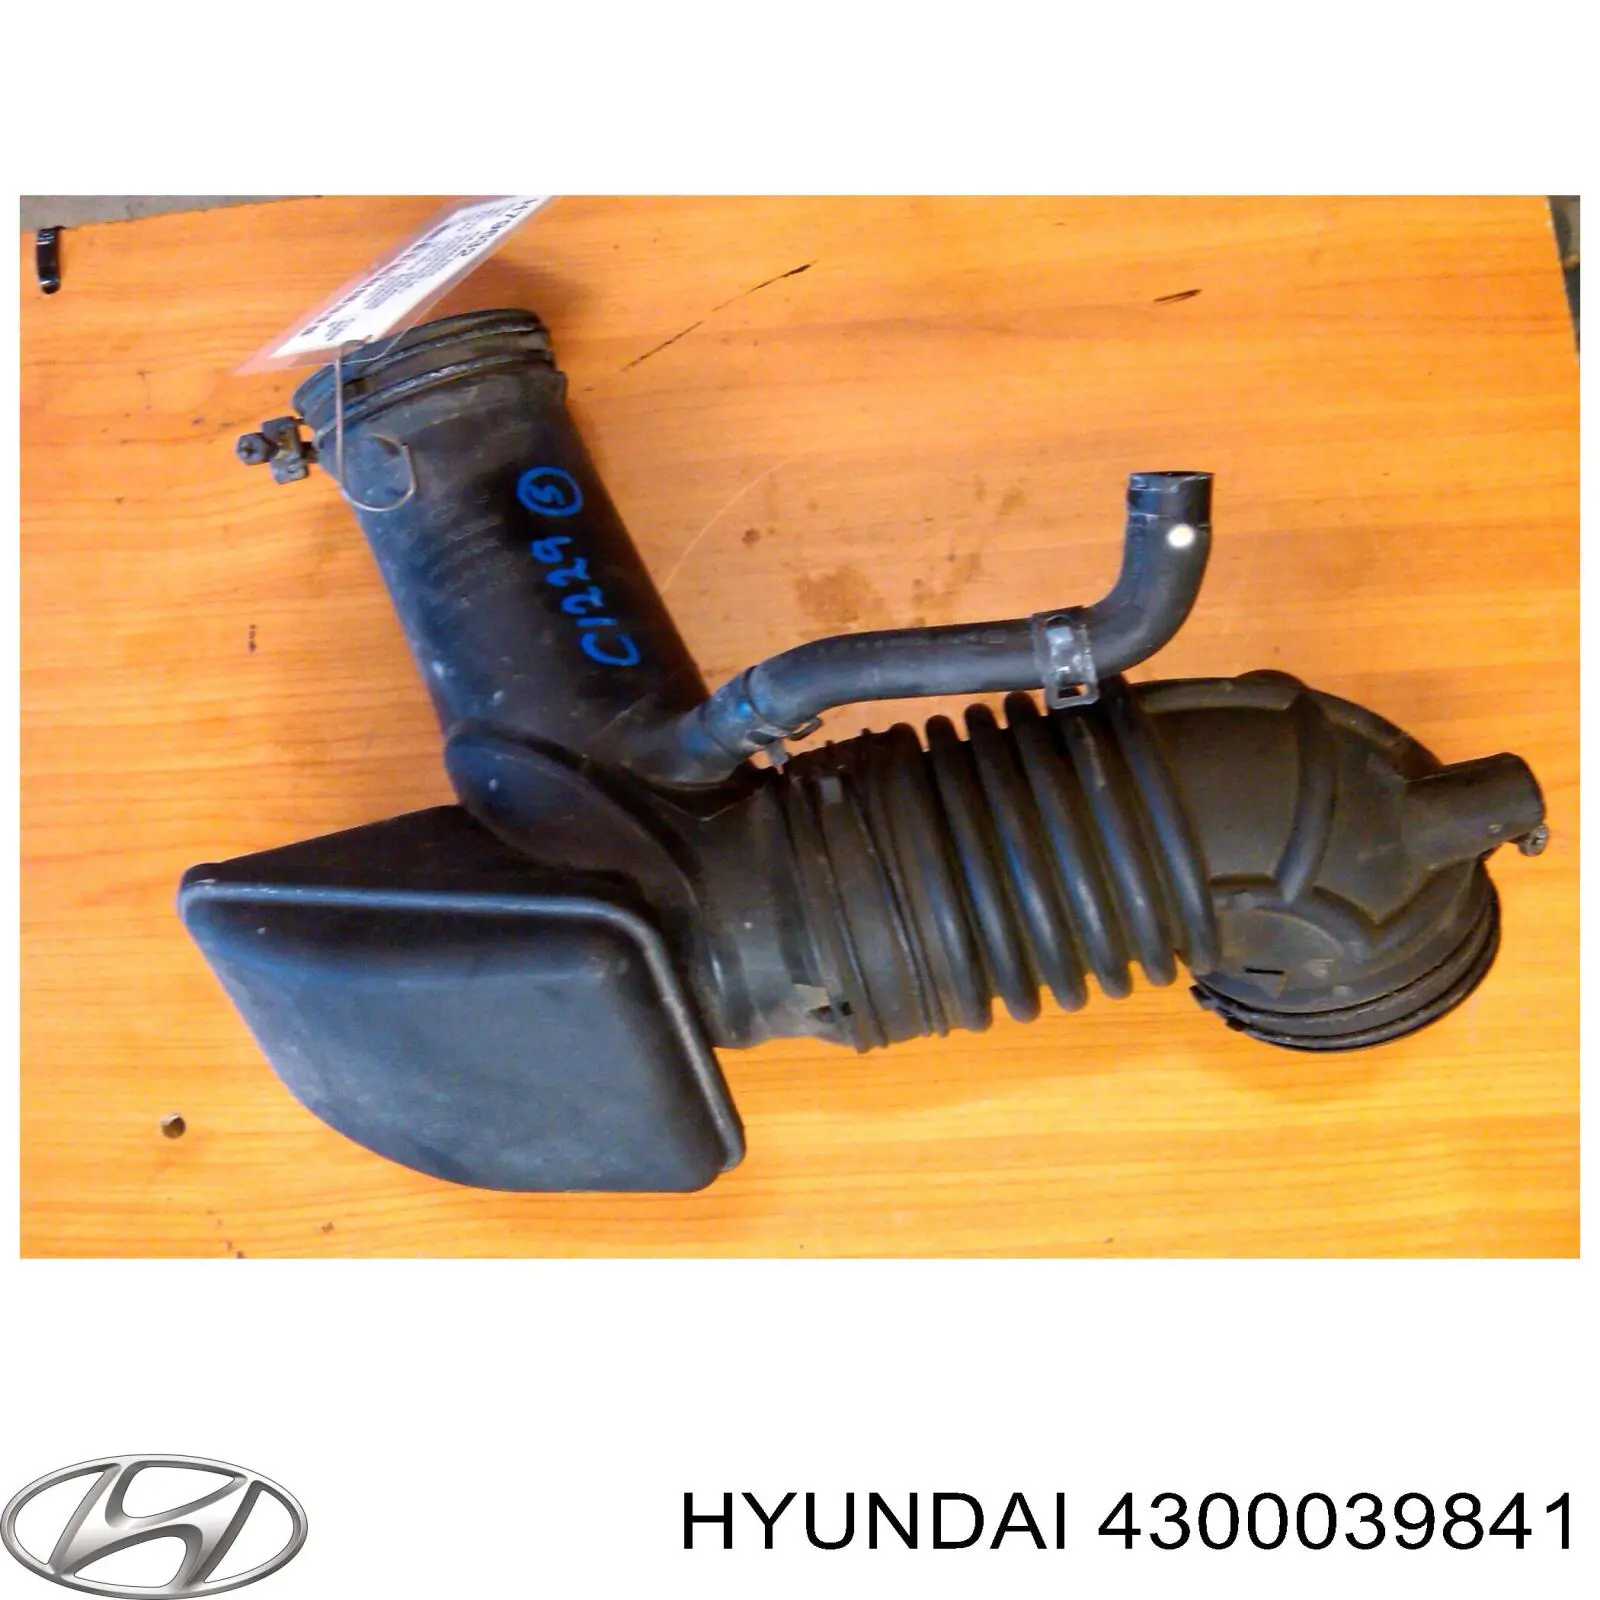 4300039840 Hyundai/Kia caja de cambios mecánica, completa